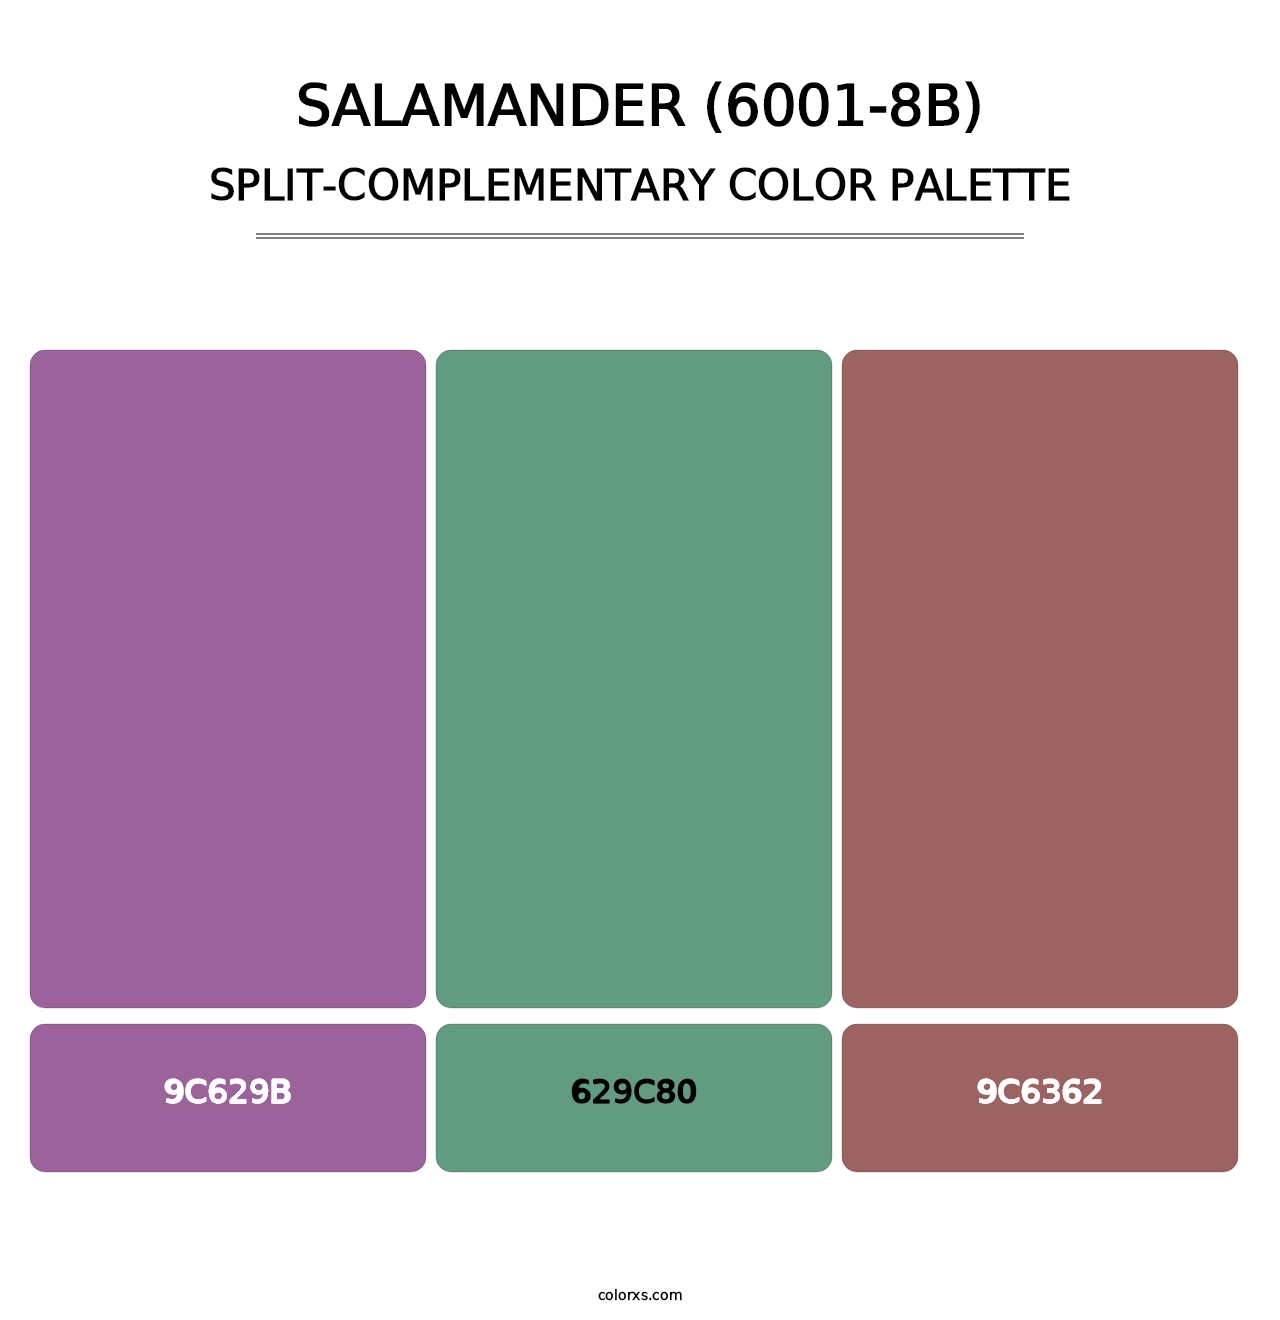 Salamander (6001-8B) - Split-Complementary Color Palette